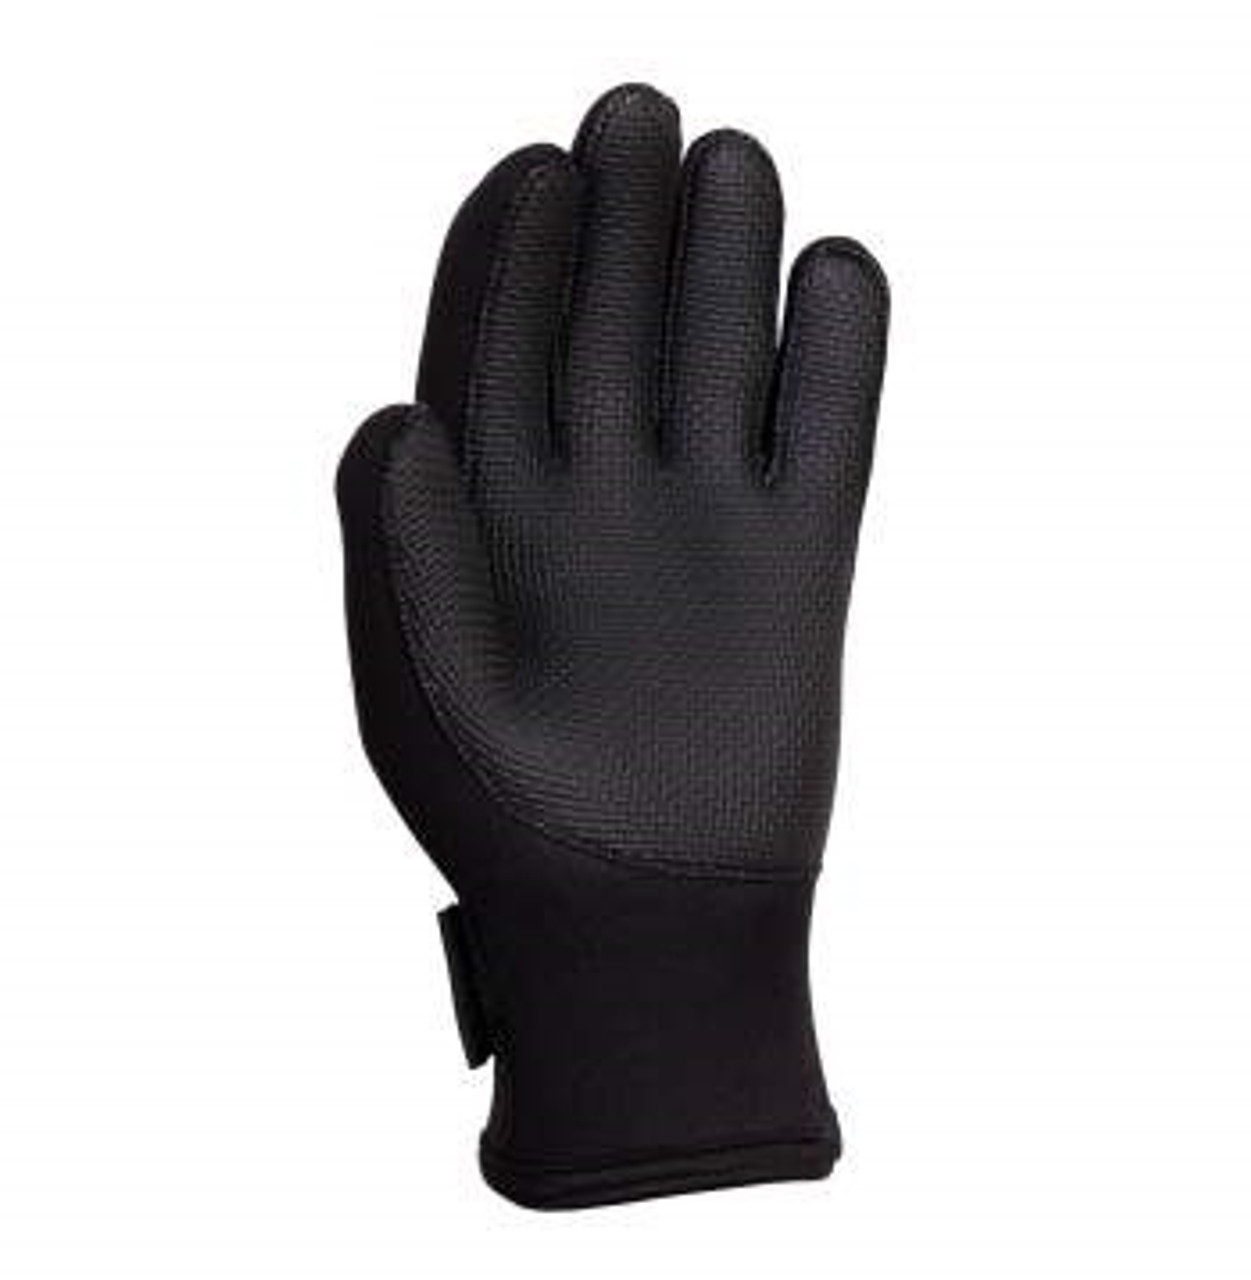 Neoprene Gloves from Hessen Antique